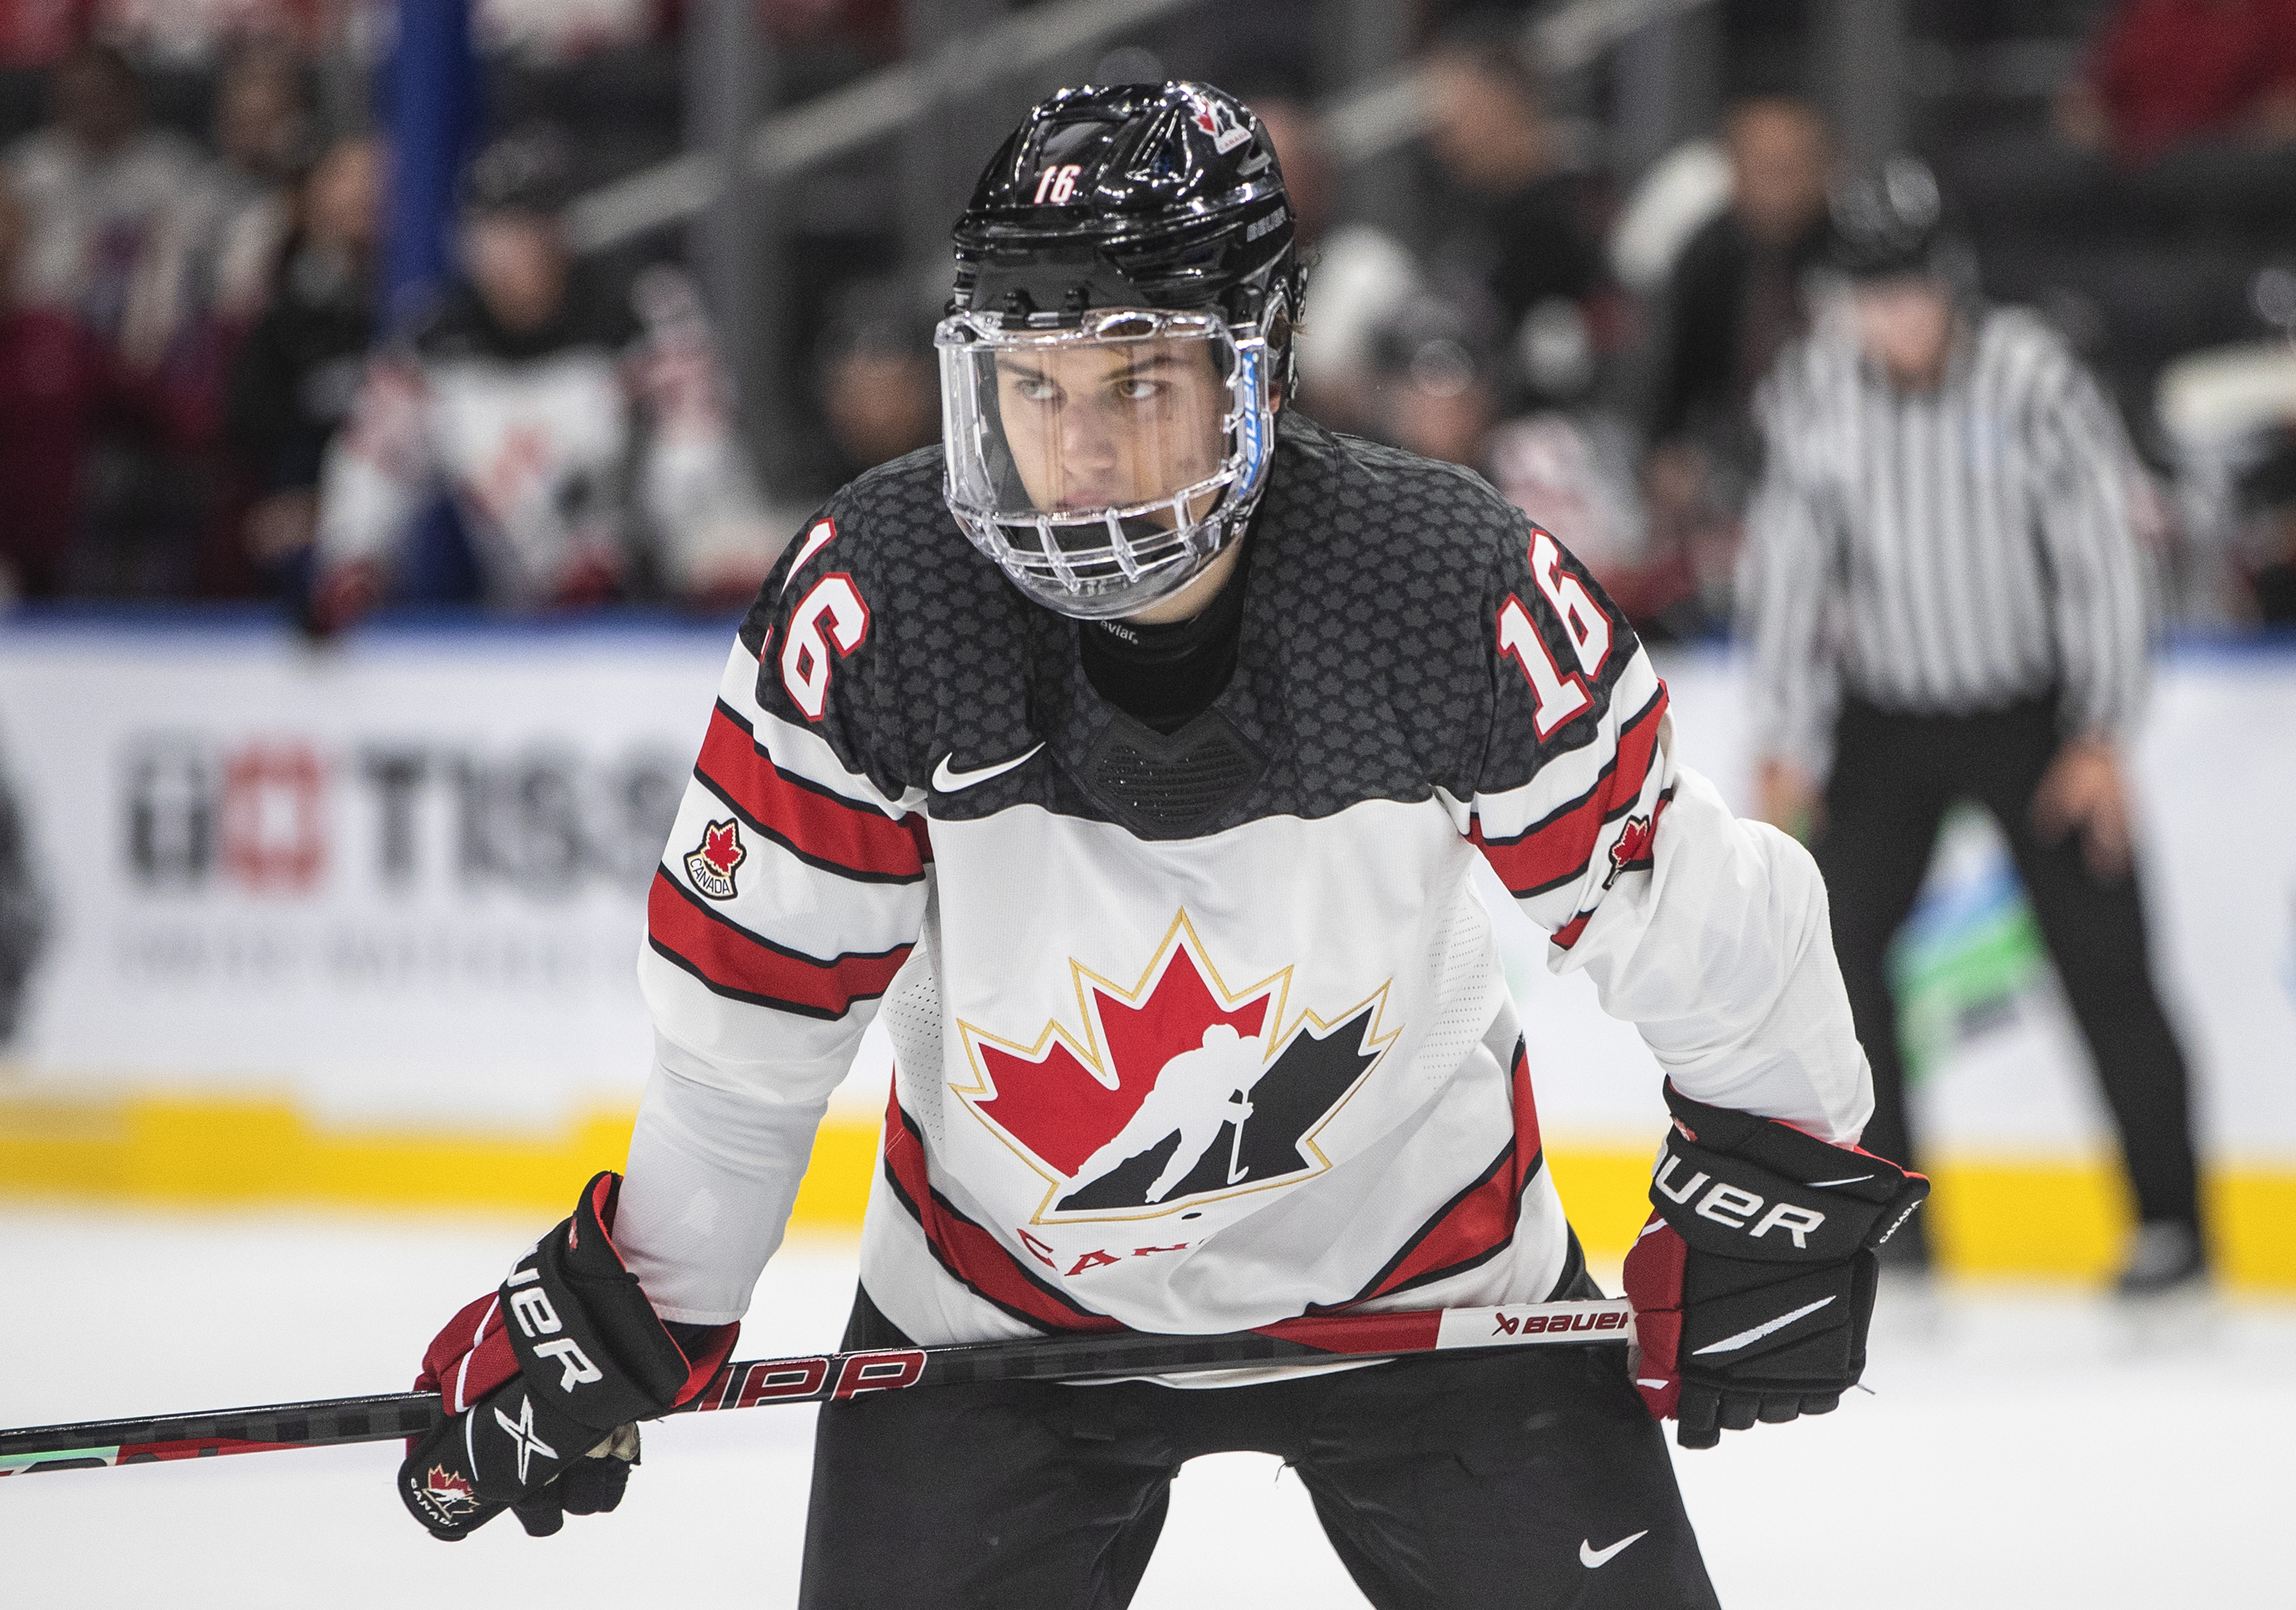 Canadian hockey team likes black jerseys - The Globe and Mail